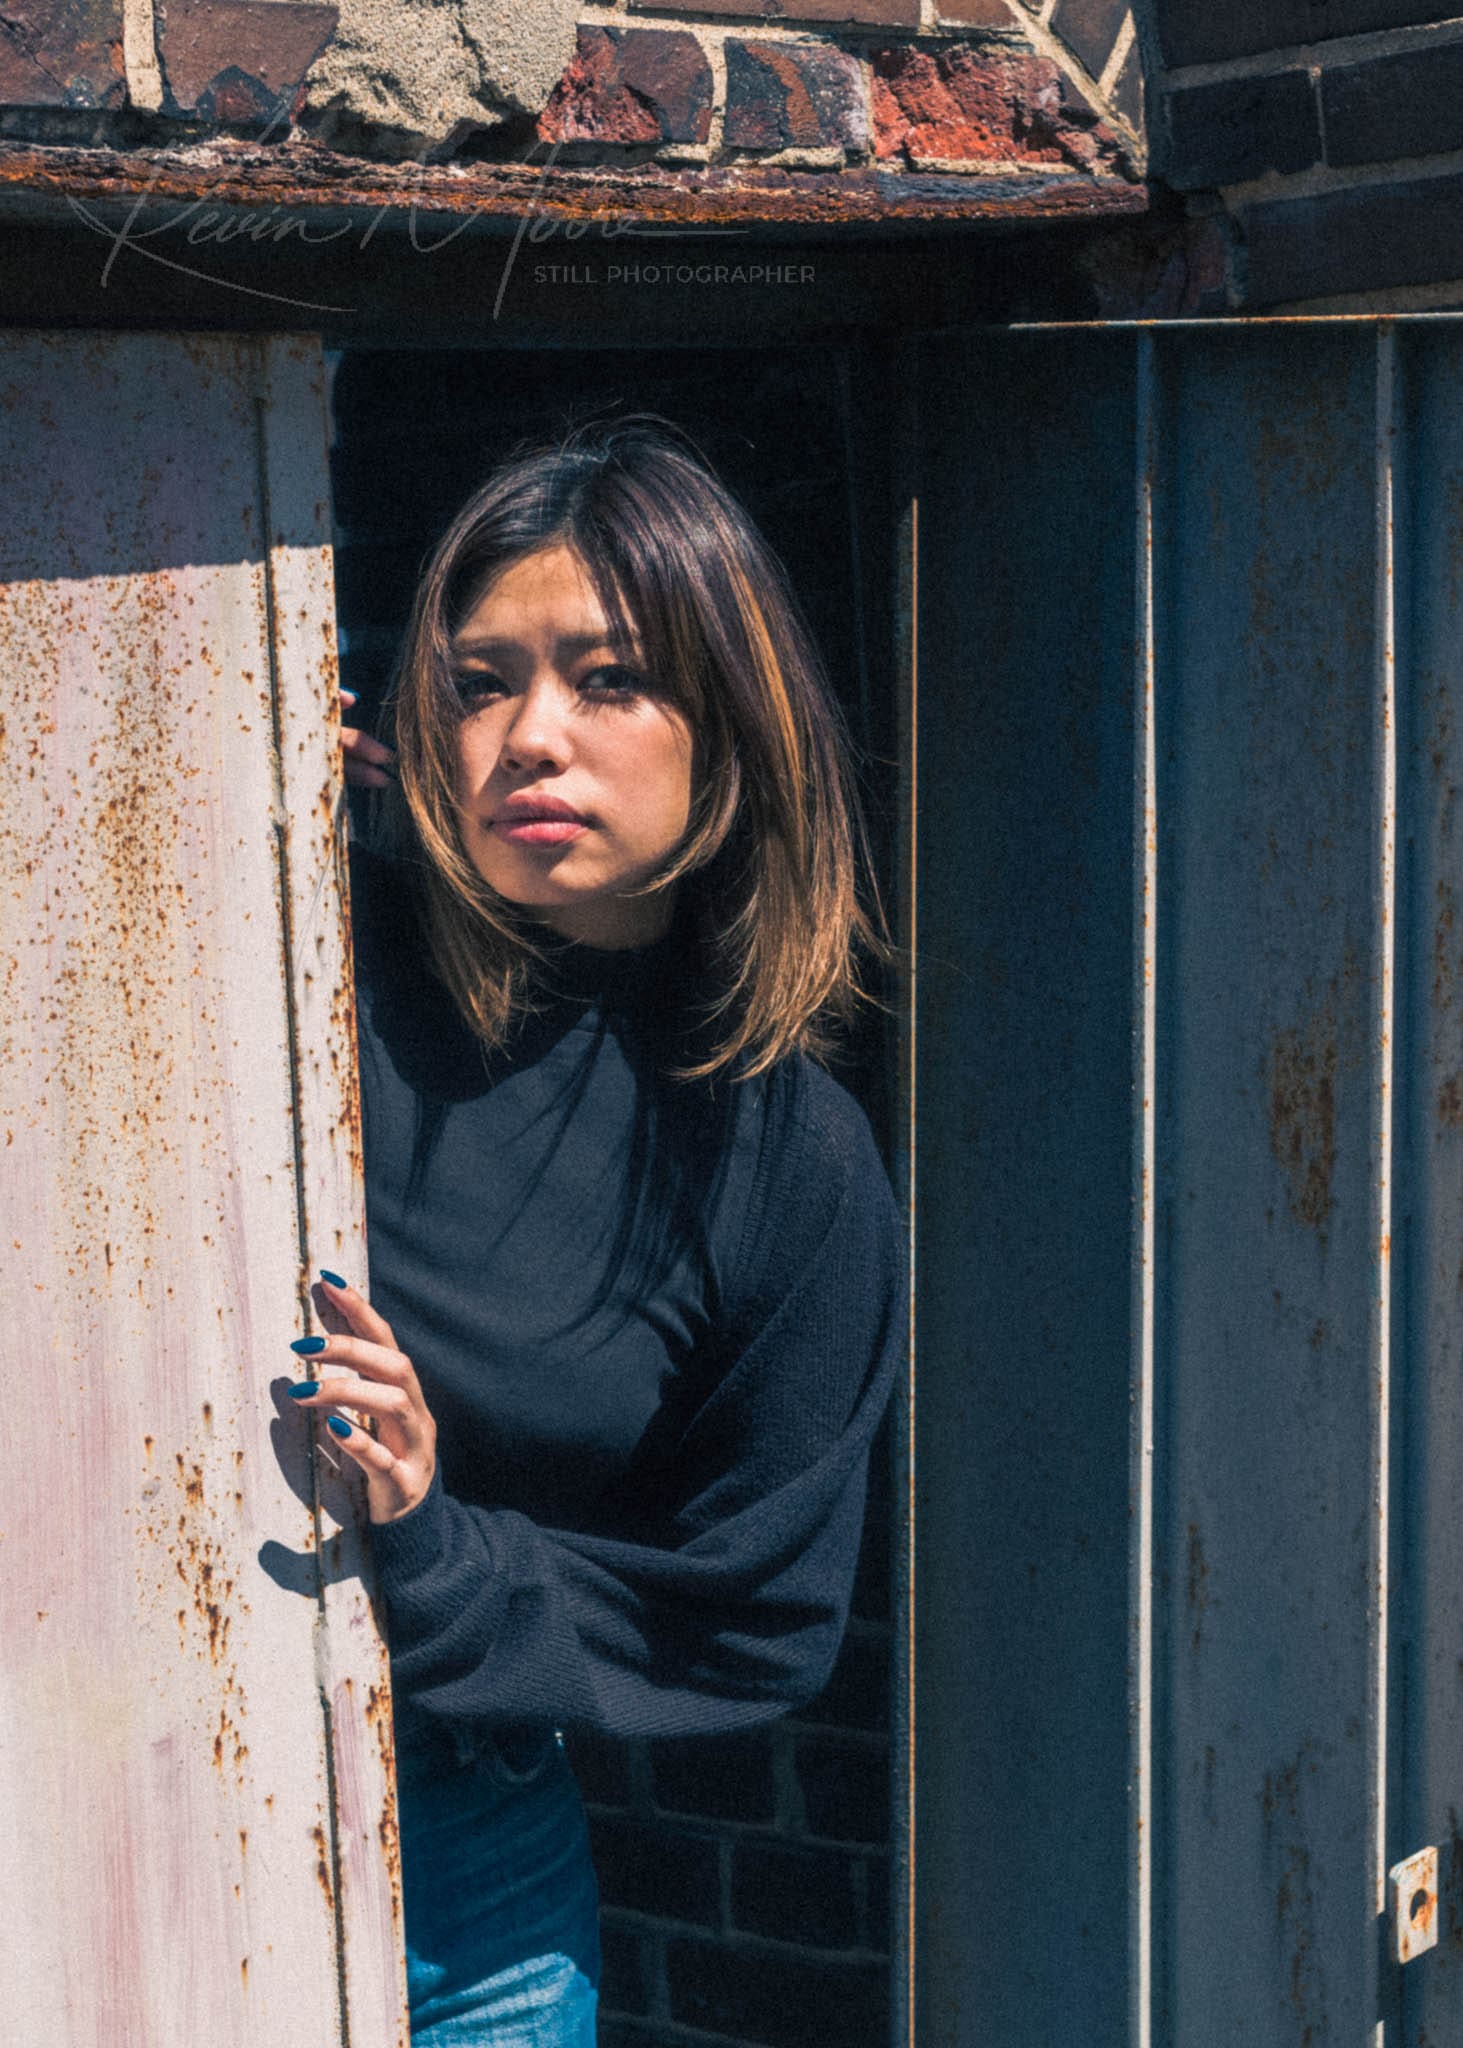 Woman with balayage hair peeking from a rusted metal door in an urban setting.